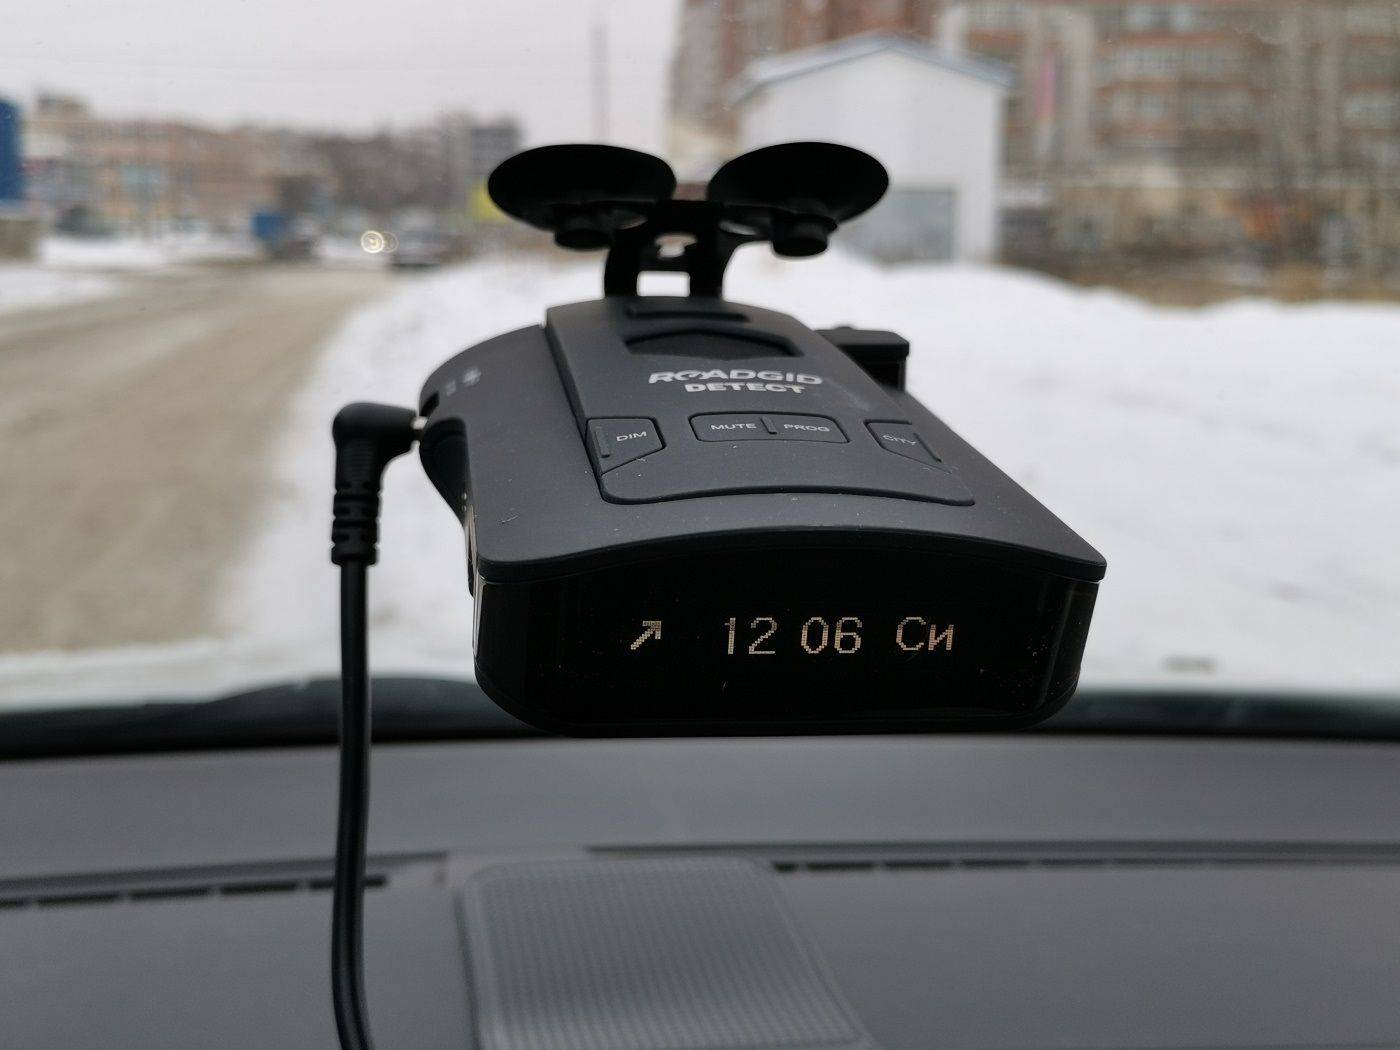 Roadgid x8 gibrid gt - видеорегистратор 5в1 с радар-детектором | обзор роадгид х8 гибрид, тестирование и настройка комбо-устройства с gps